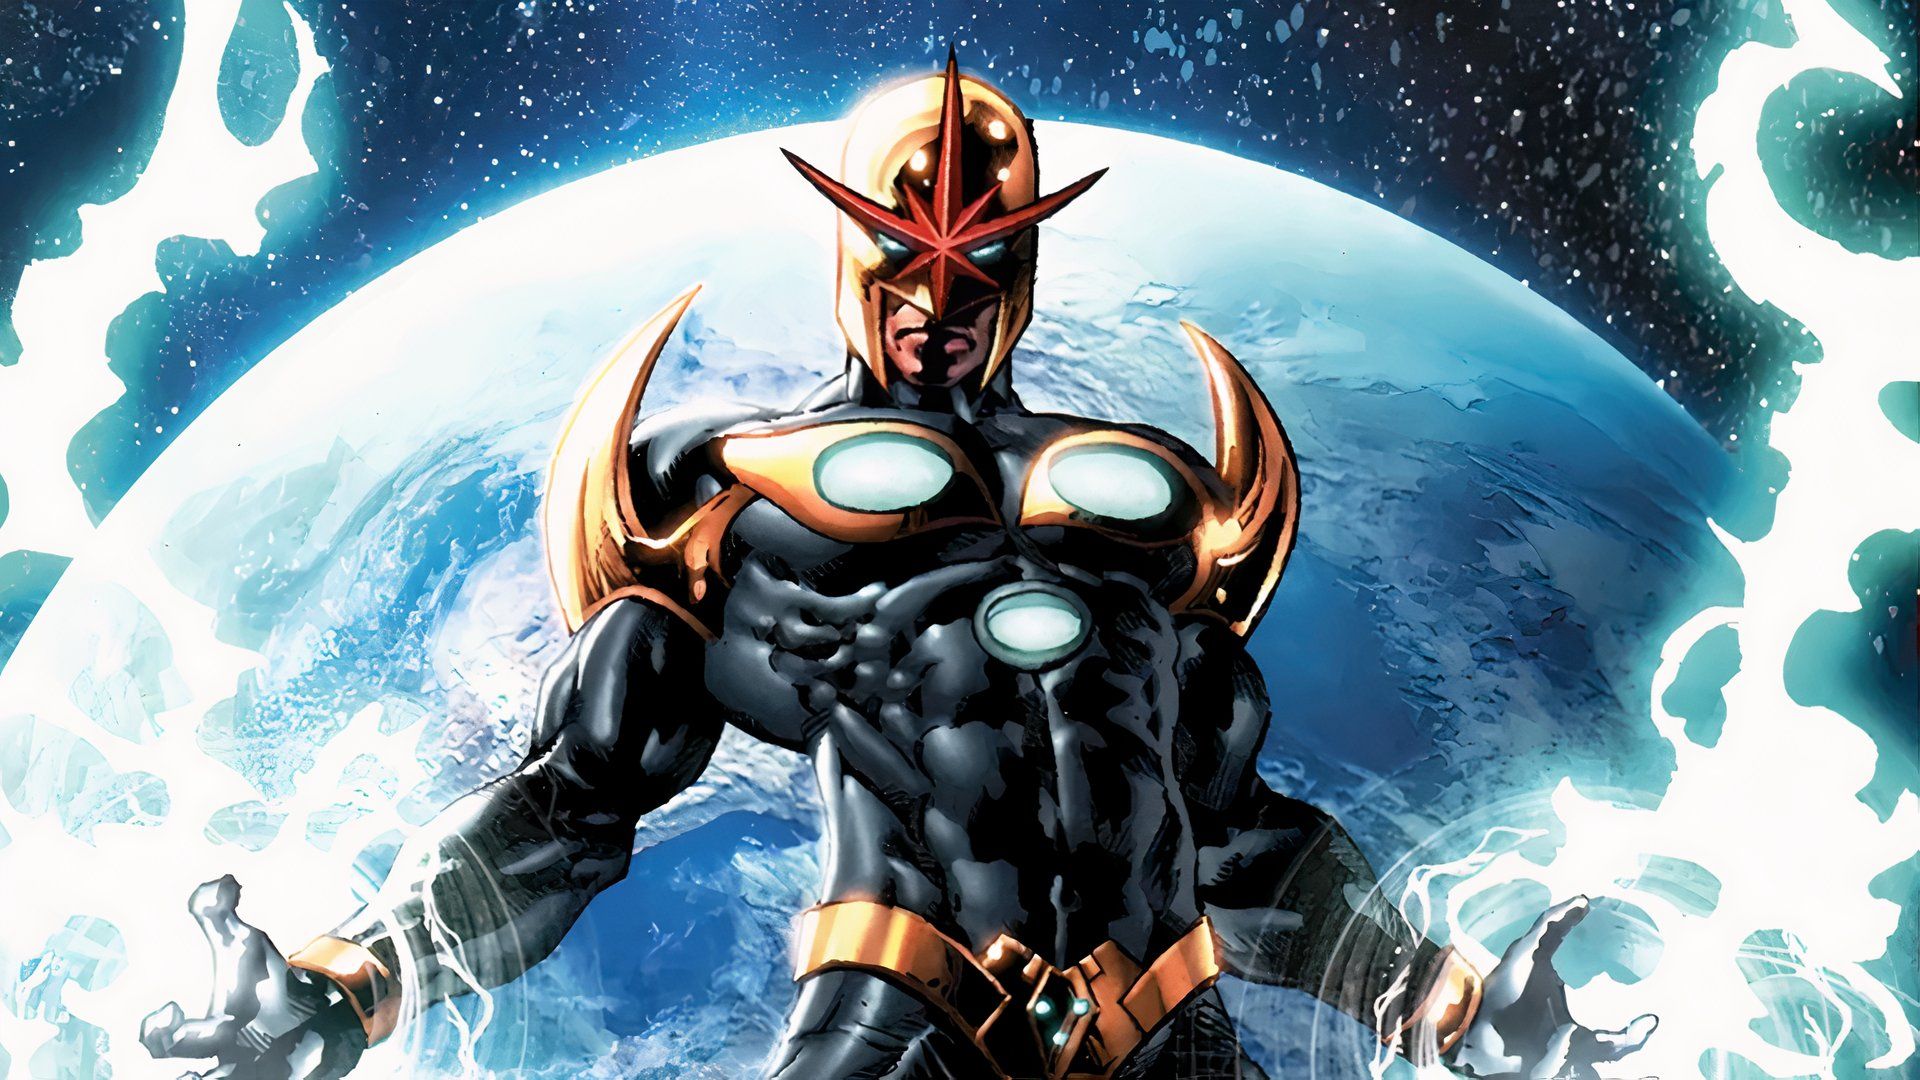 Marvels Nova получает захватывающее обновление производства и кастинга